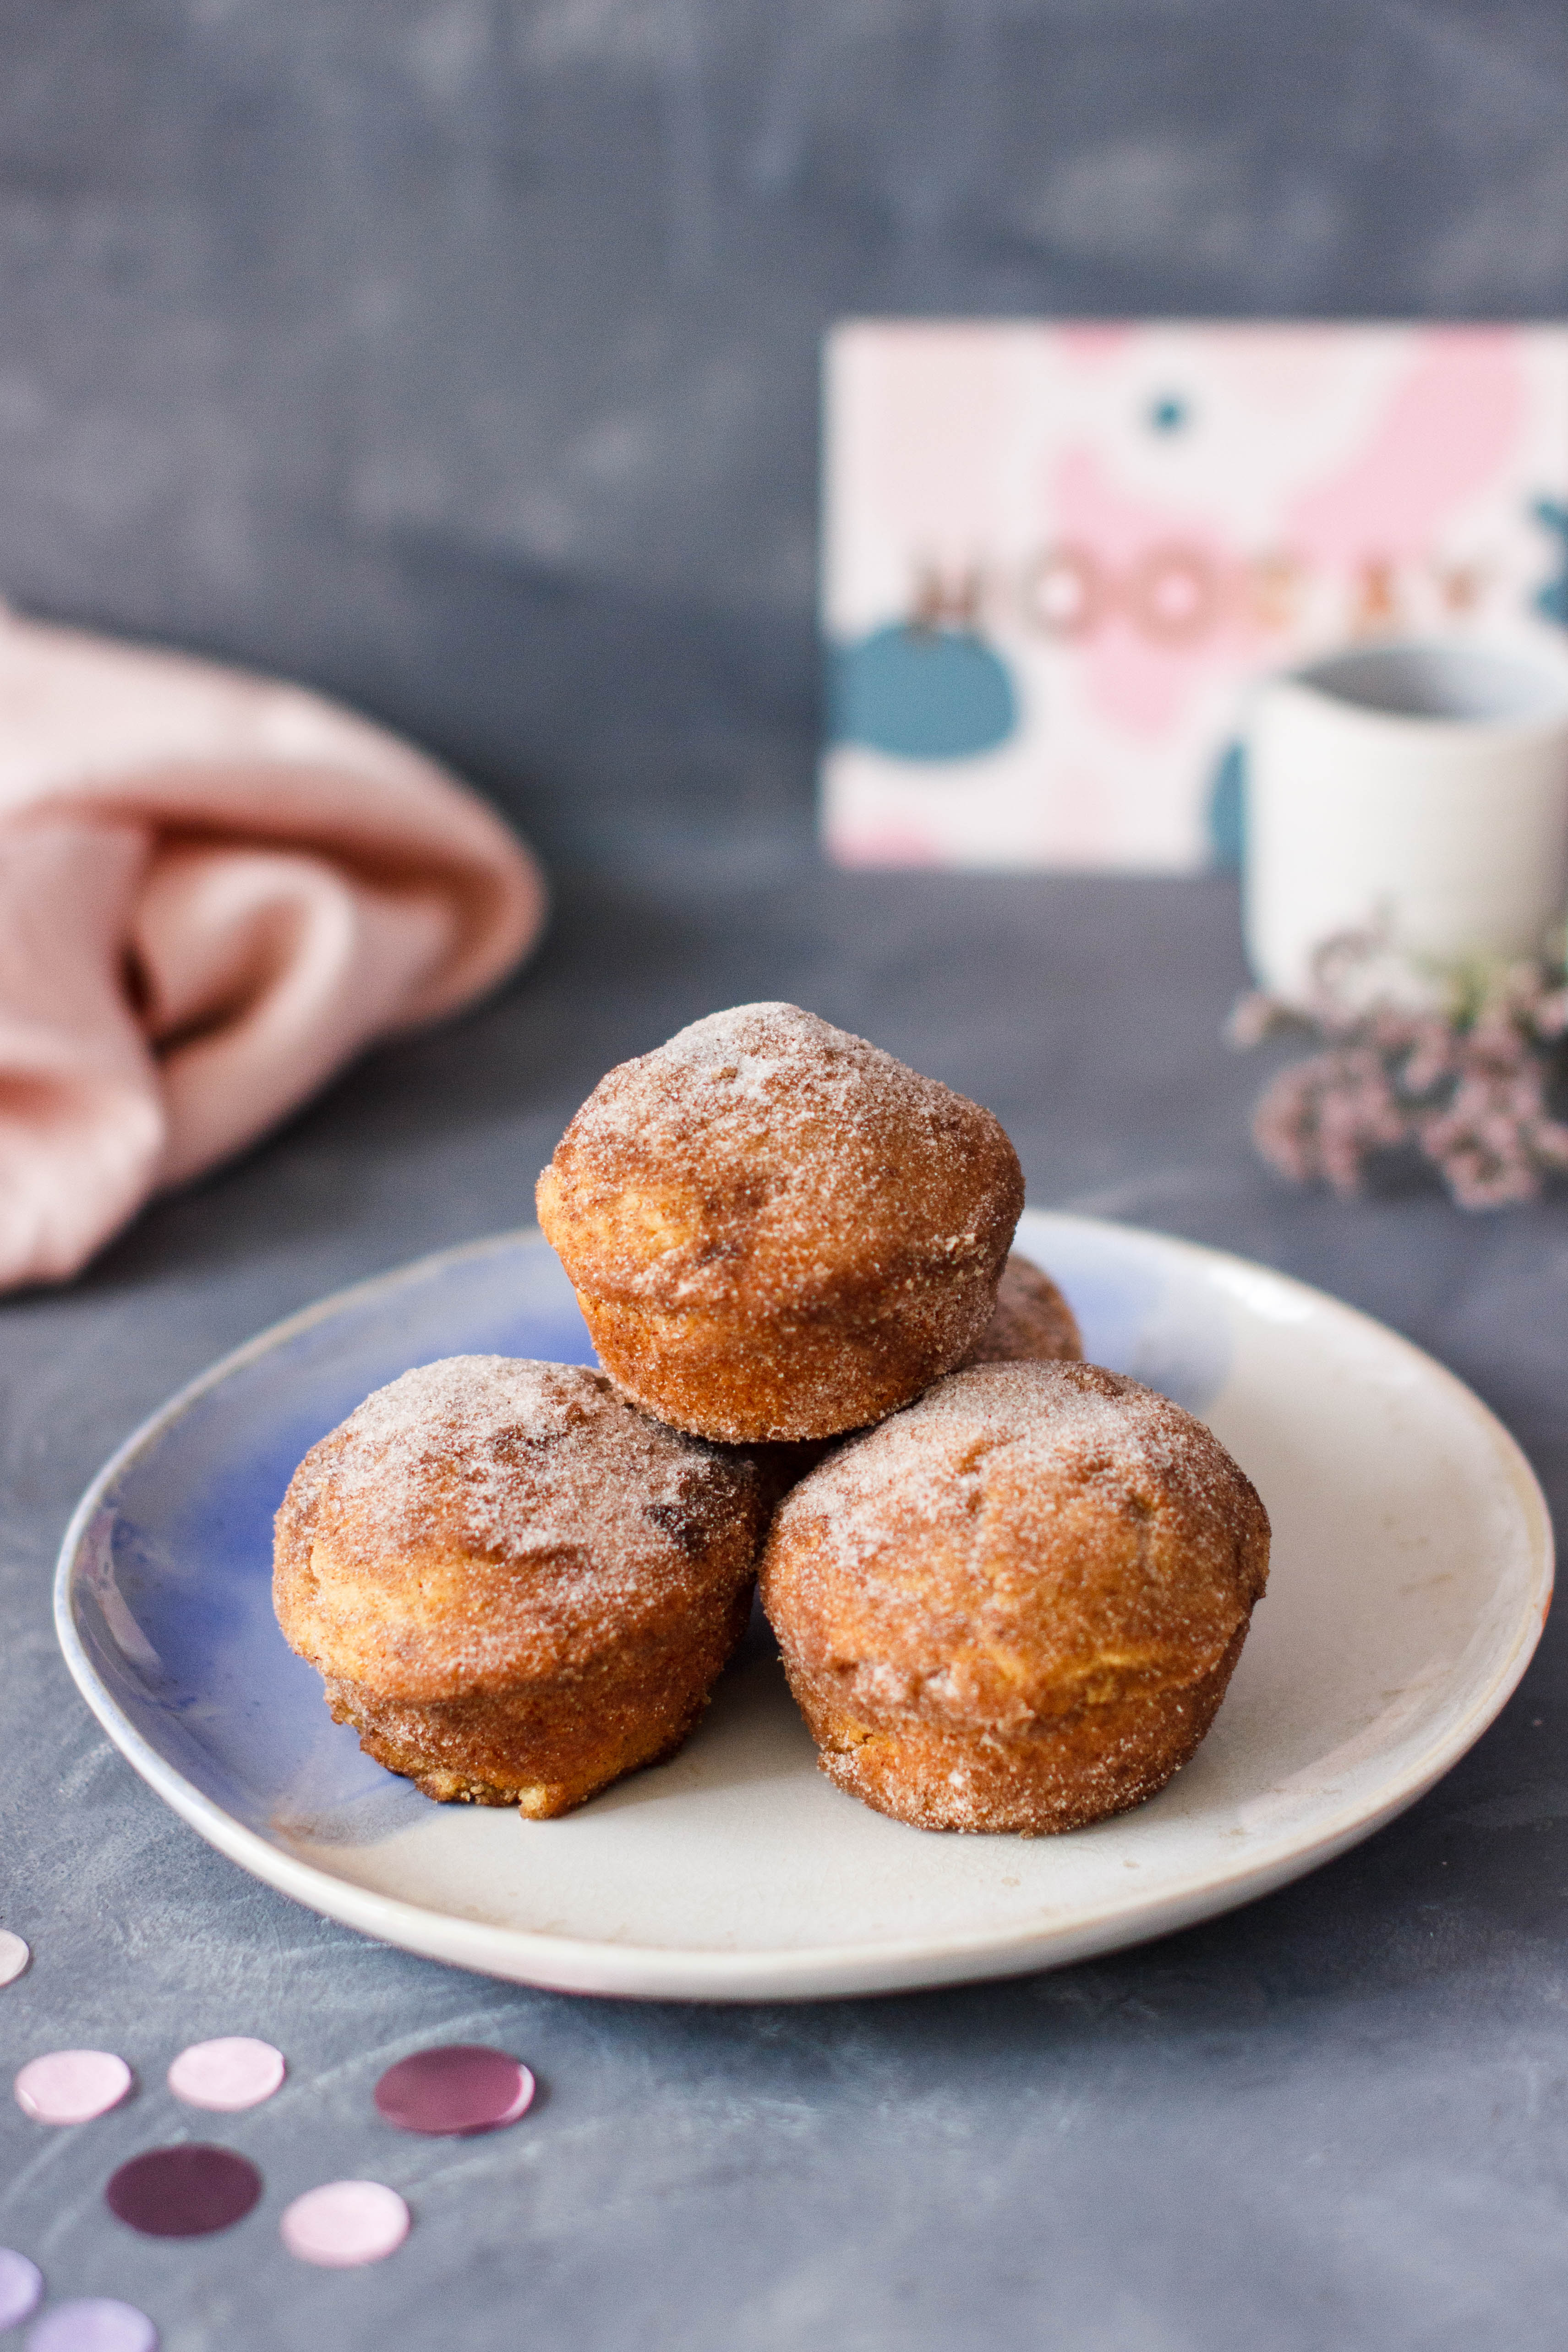 Rezept für Donut Muffins oder Berliner aus der Muffinform - Hey Foodsister